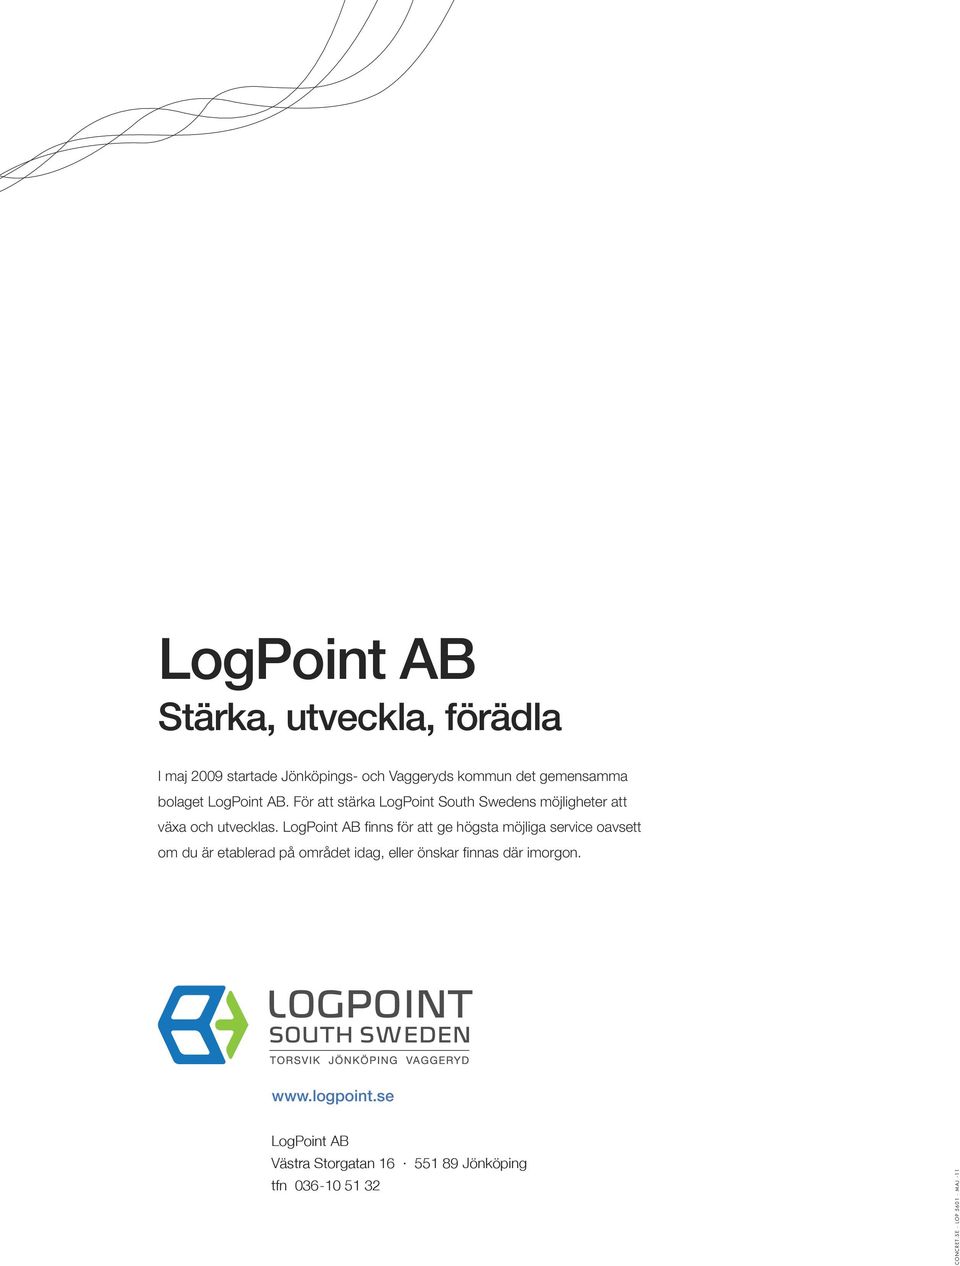 LogPoint AB finns för att ge högsta möjliga service oavsett om du är etablerad på området idag, eller önskar